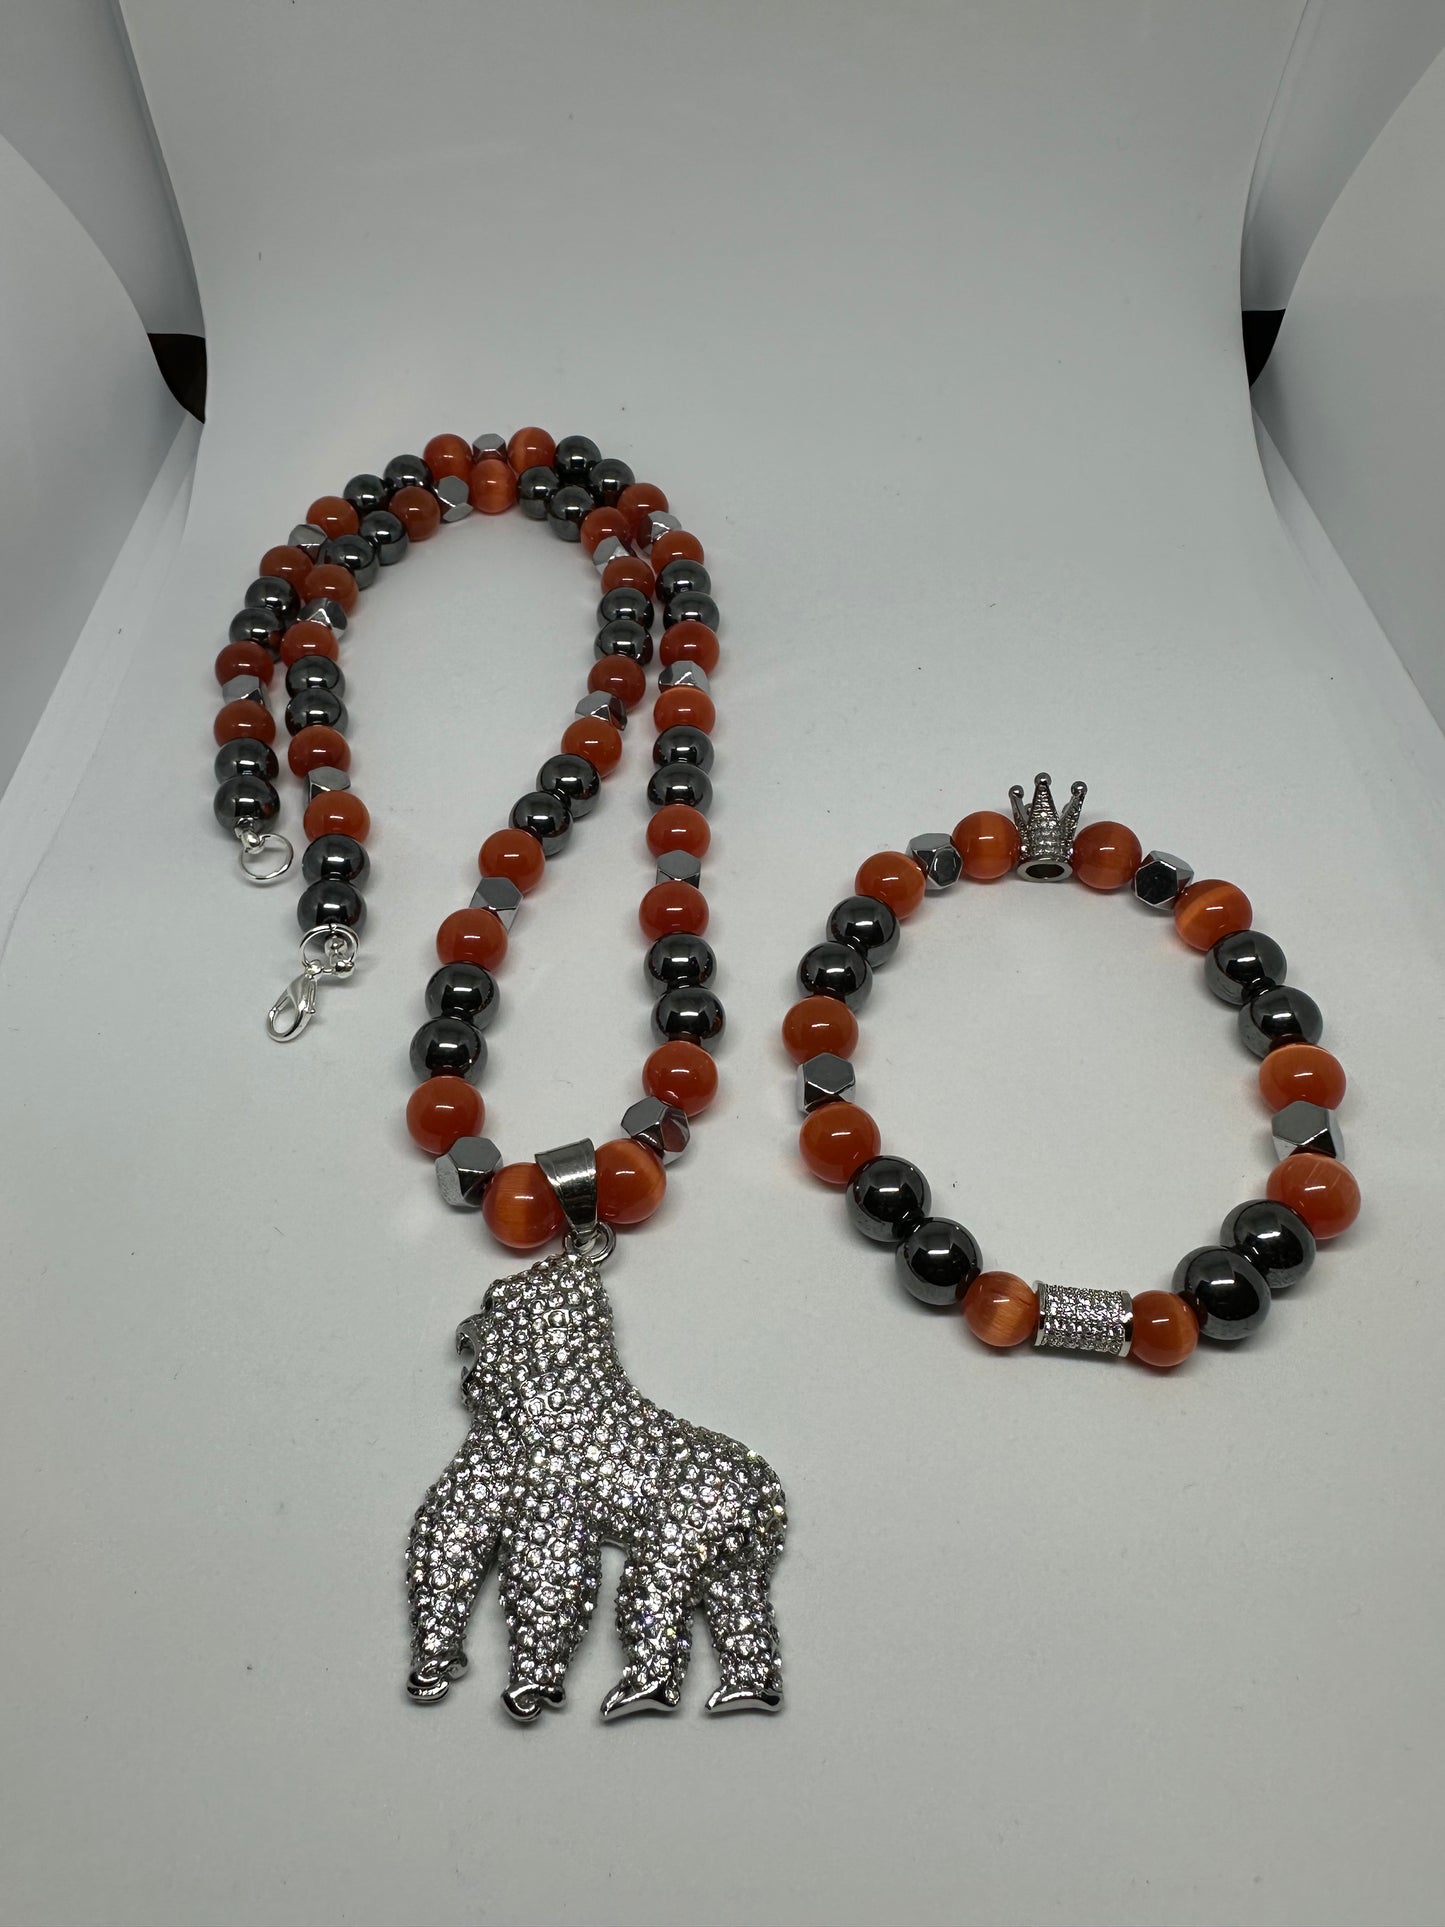 Bling necklace and bracelet set